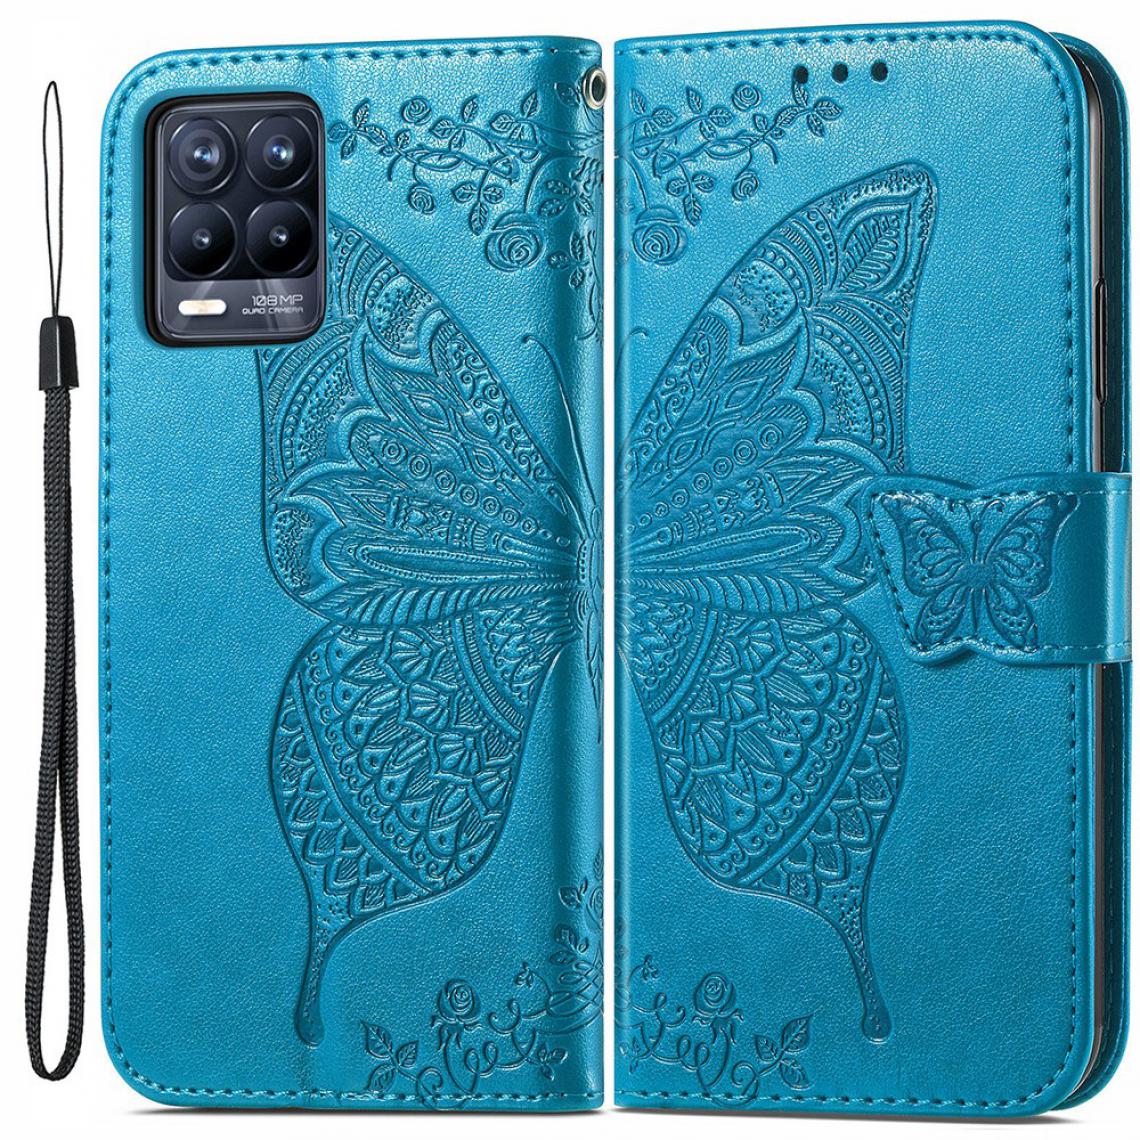 Other - Etui en PU Impression de gros papillons avec support bleu pour votre Realme 8/8 Pro - Coque, étui smartphone